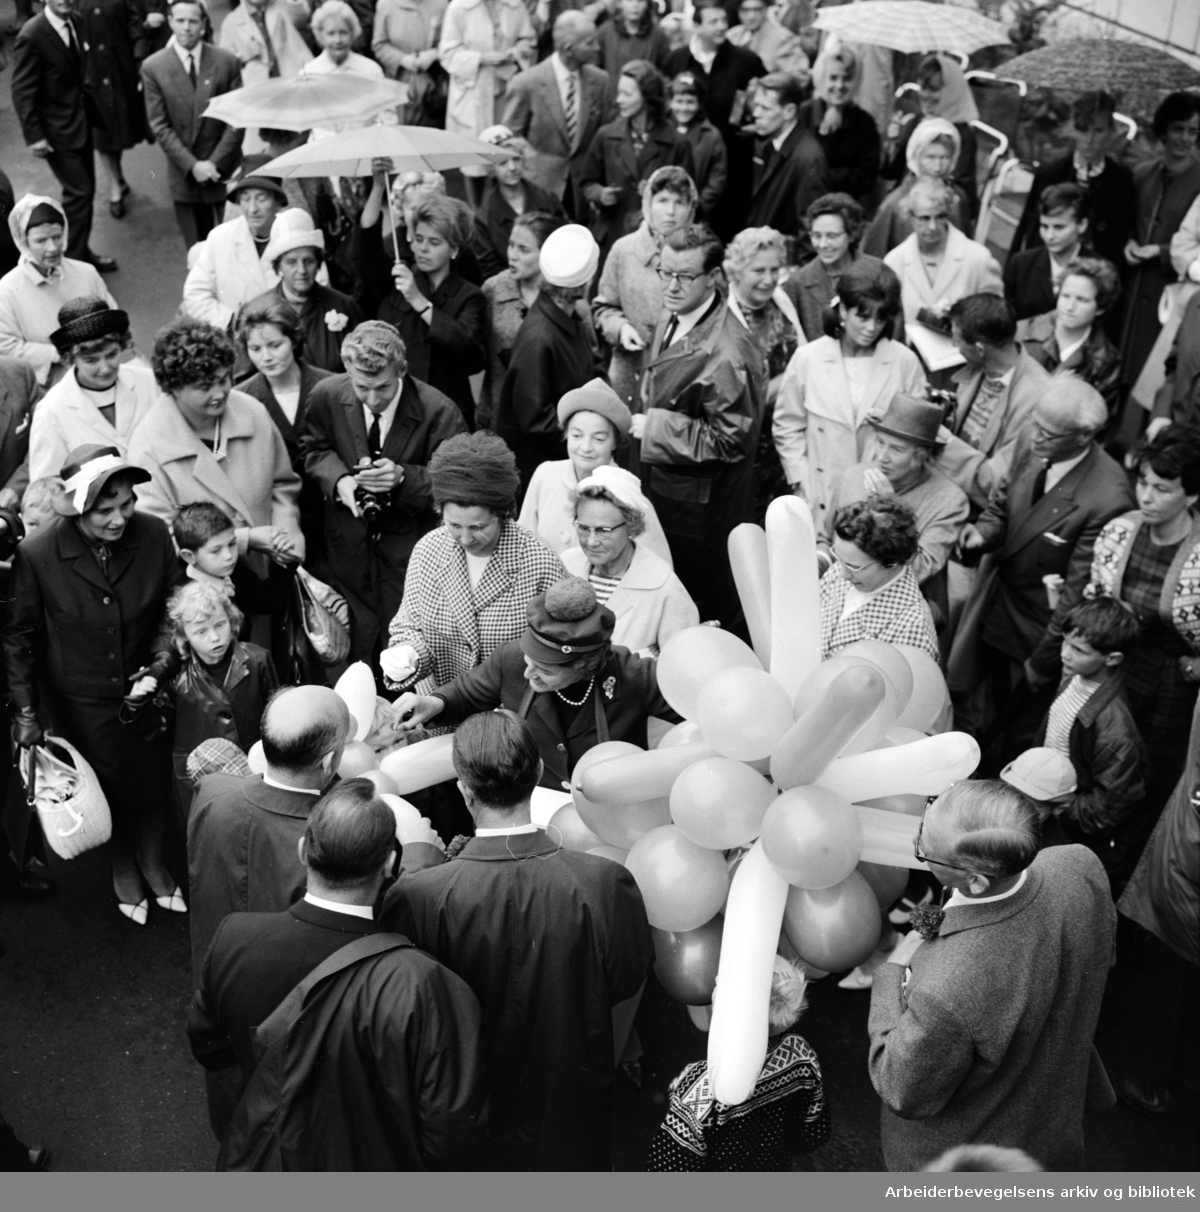 Ordfører Brynjulf Bull foretok den offisielle åpningen av Vikaterrassene i Oslo. 26 August 1964. I folkemengden: Wenche Myhre og journalist Tor von Krogh fra NRK.